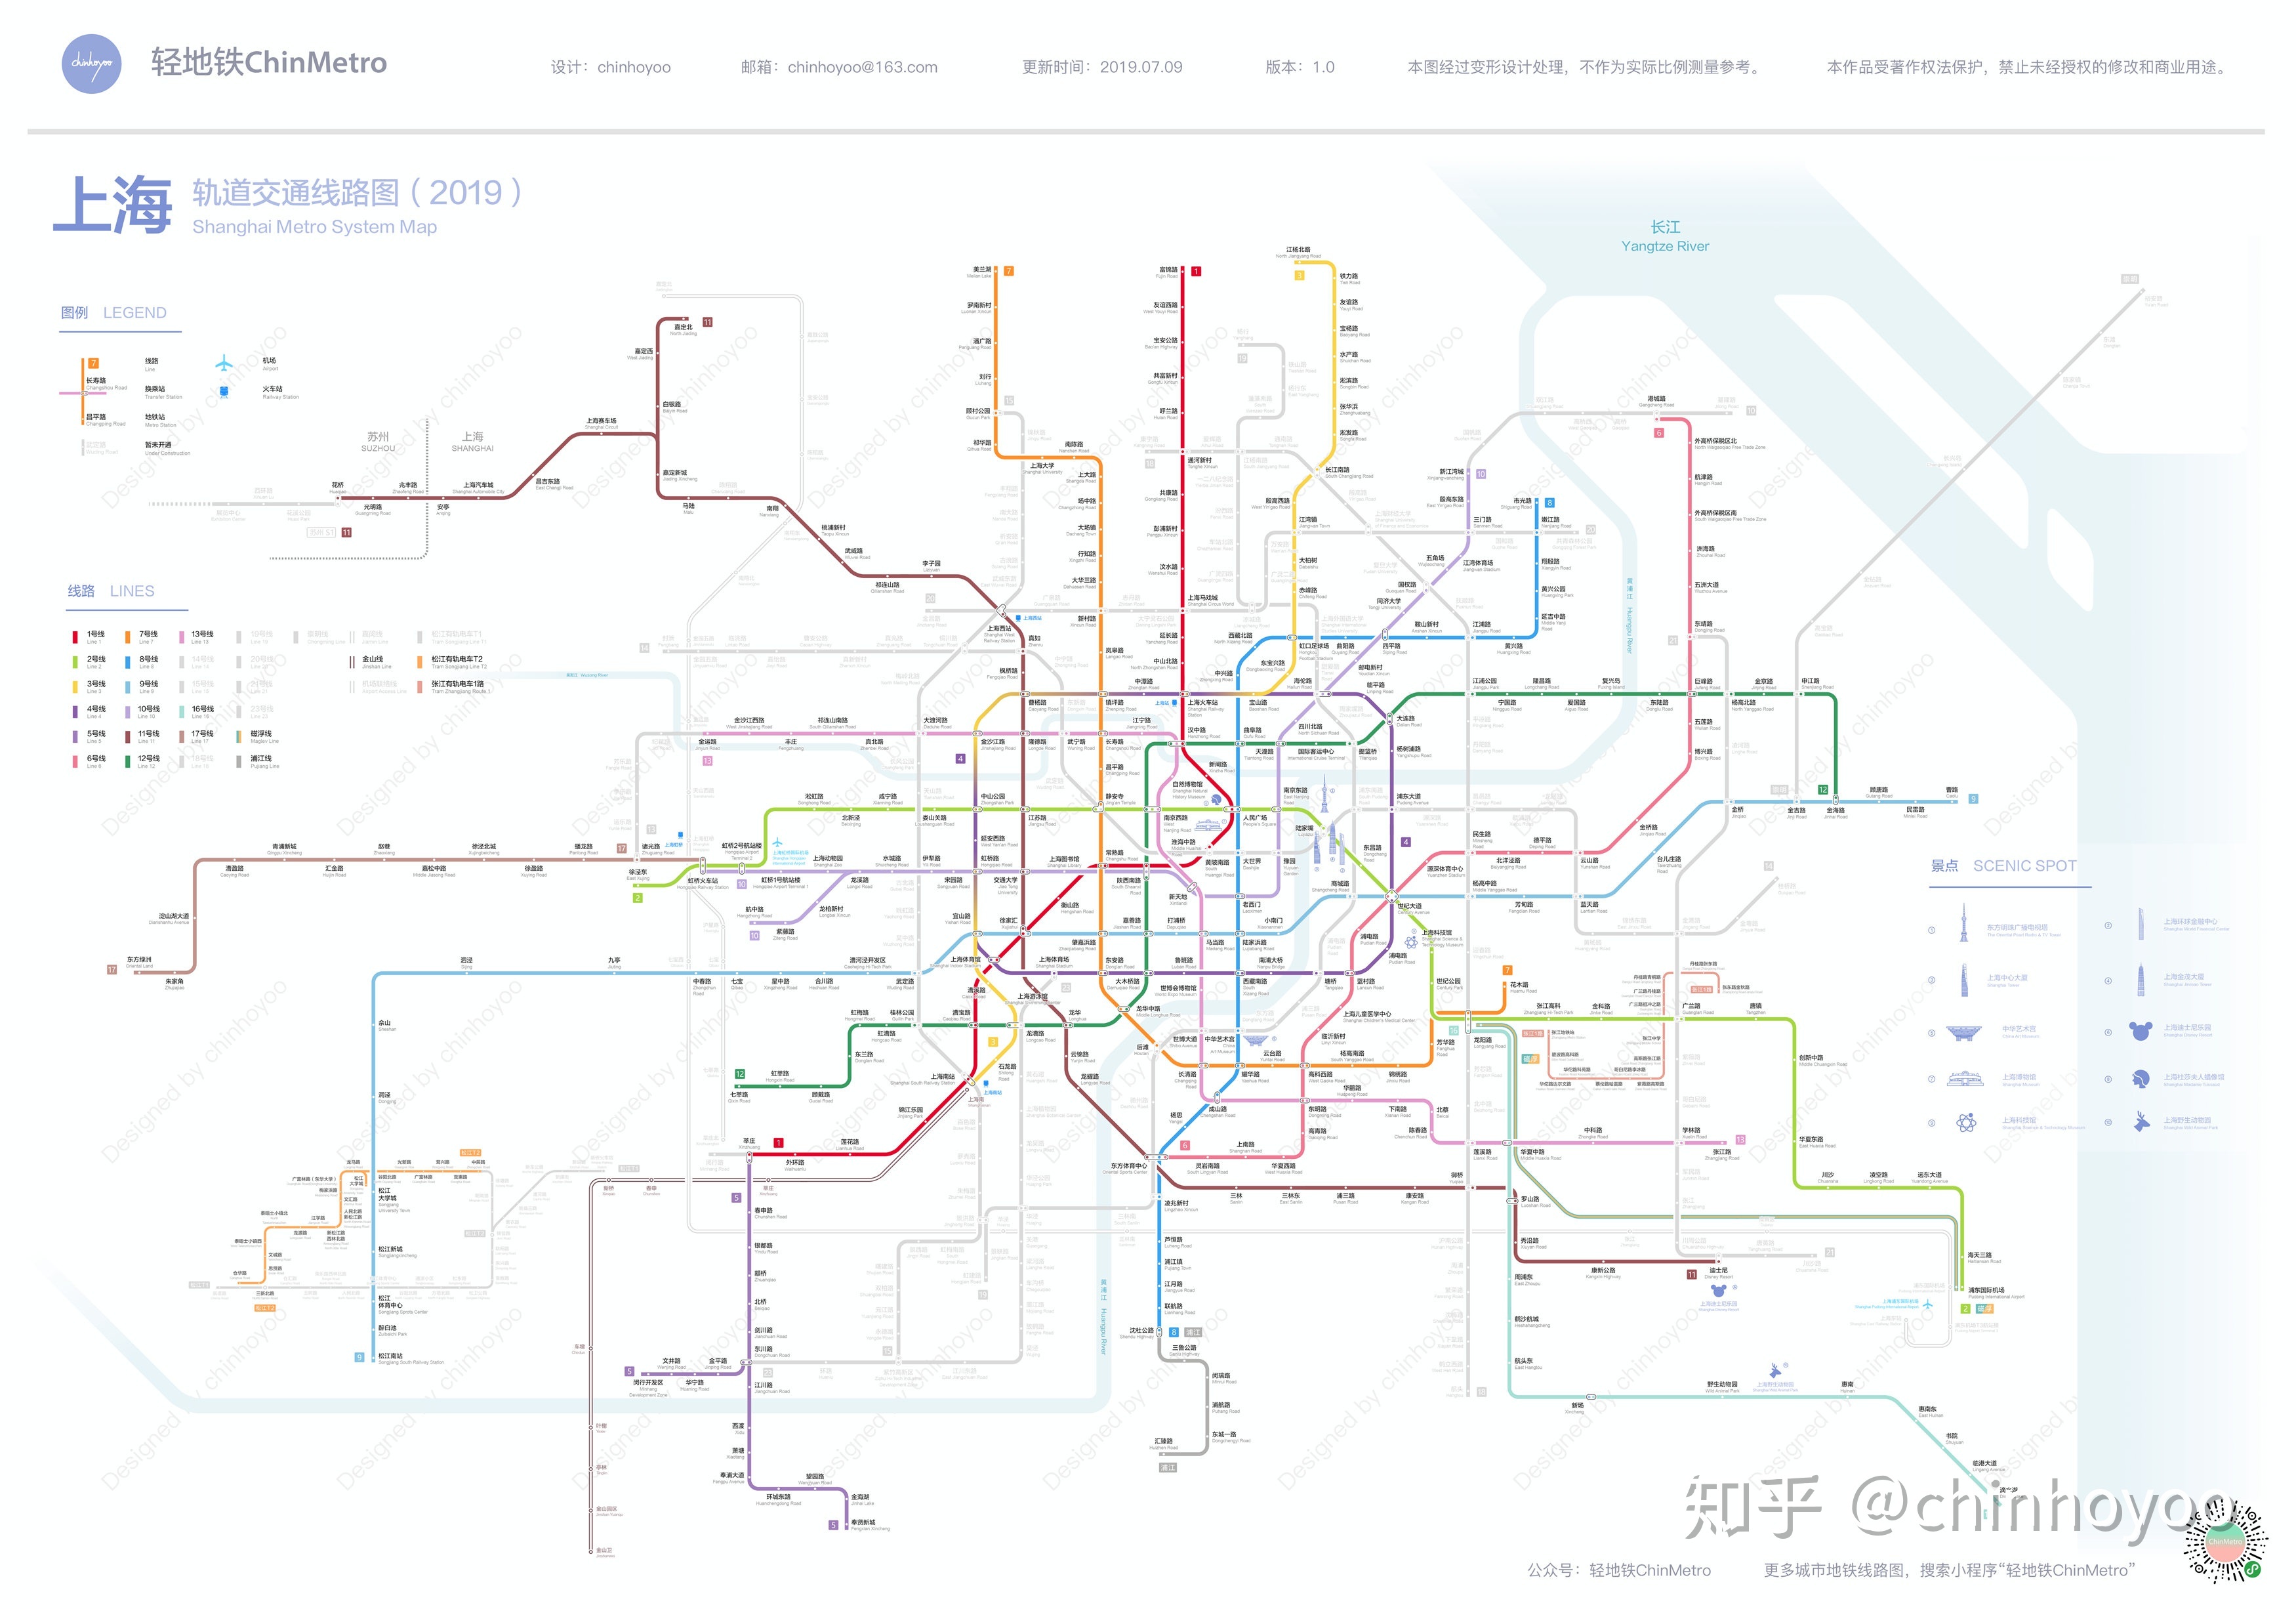 [内带干货的伪攻略]萌新梦幻的无限之旅（布线篇1）--上海|模拟地铁